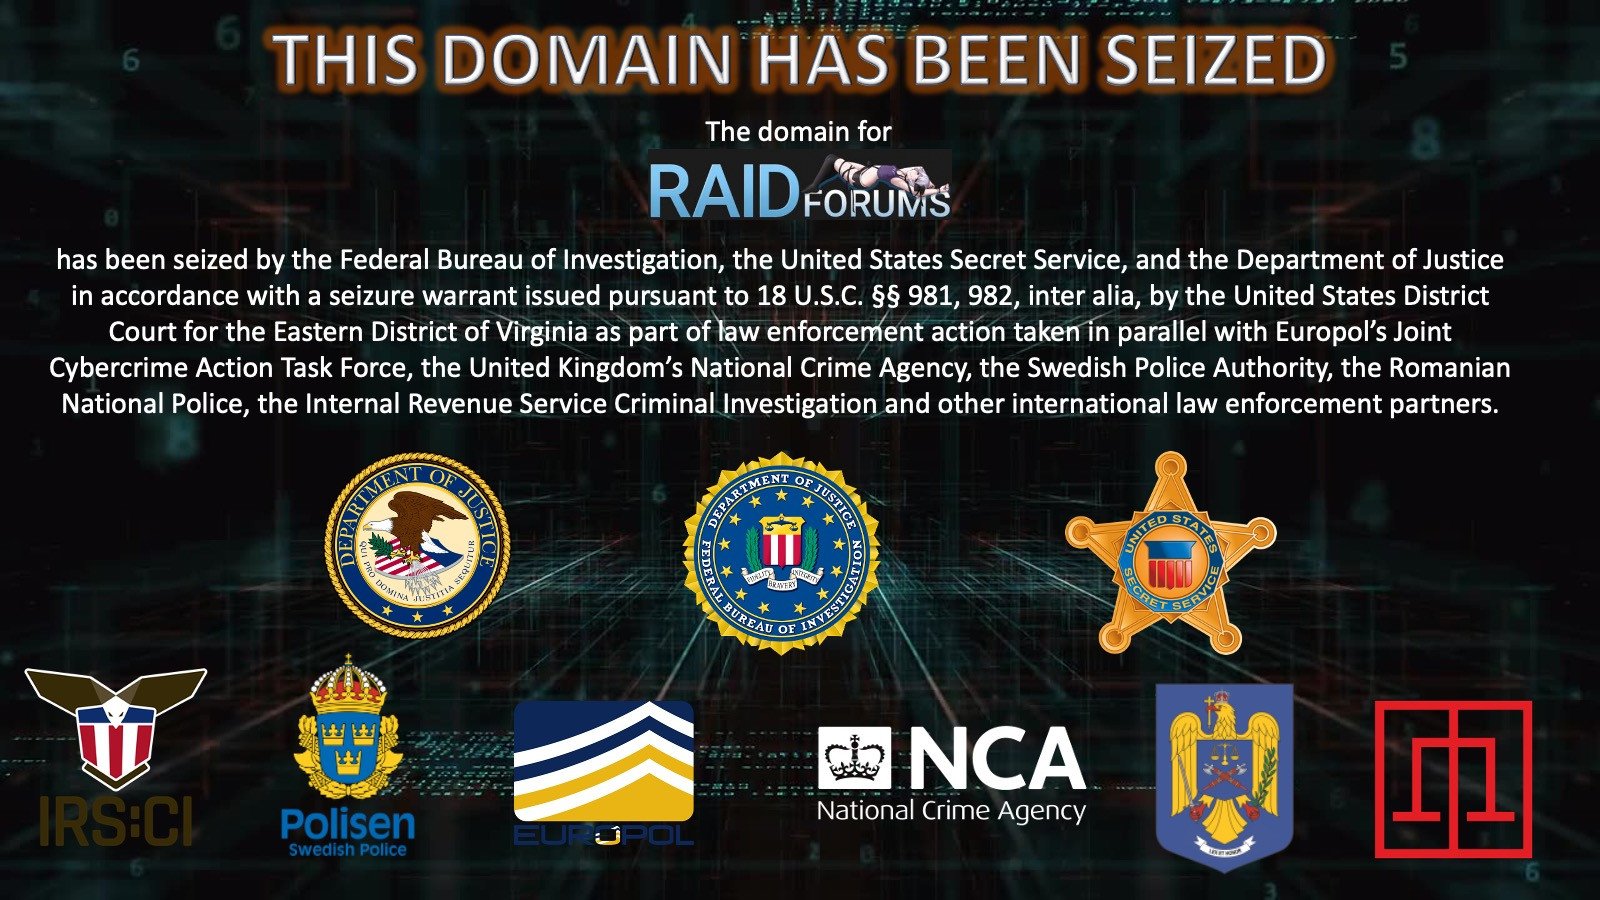 Les autorités saisissent les domaines et l'infrastructure du marché RaidForums pour les bases de données volées